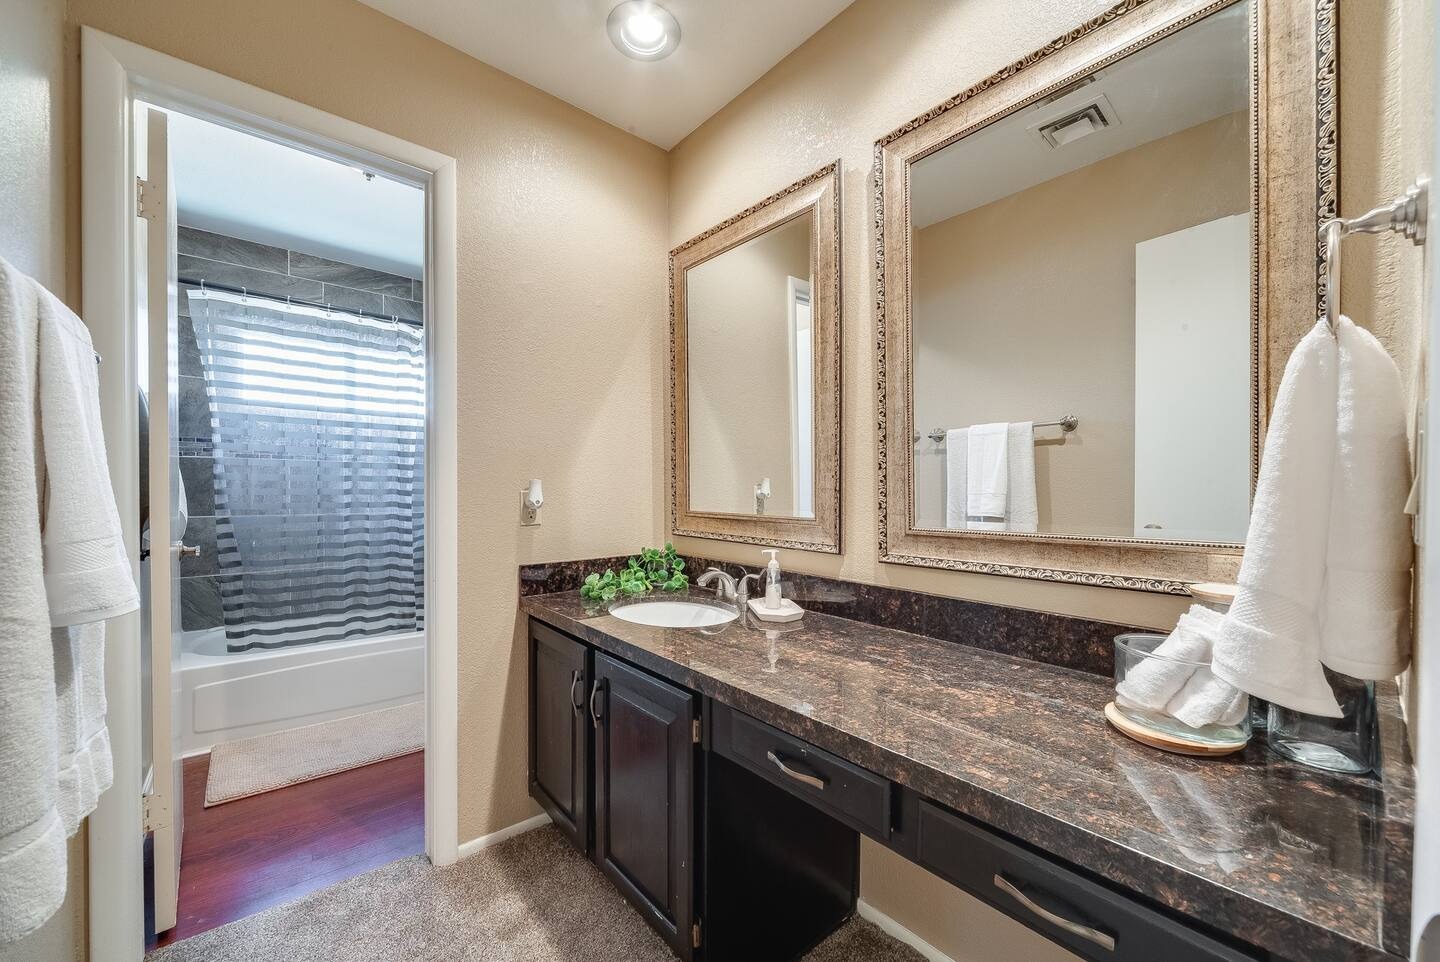 Glendale Vacation Rentals, Cahill Casa - Full bathroom near both bedrooms